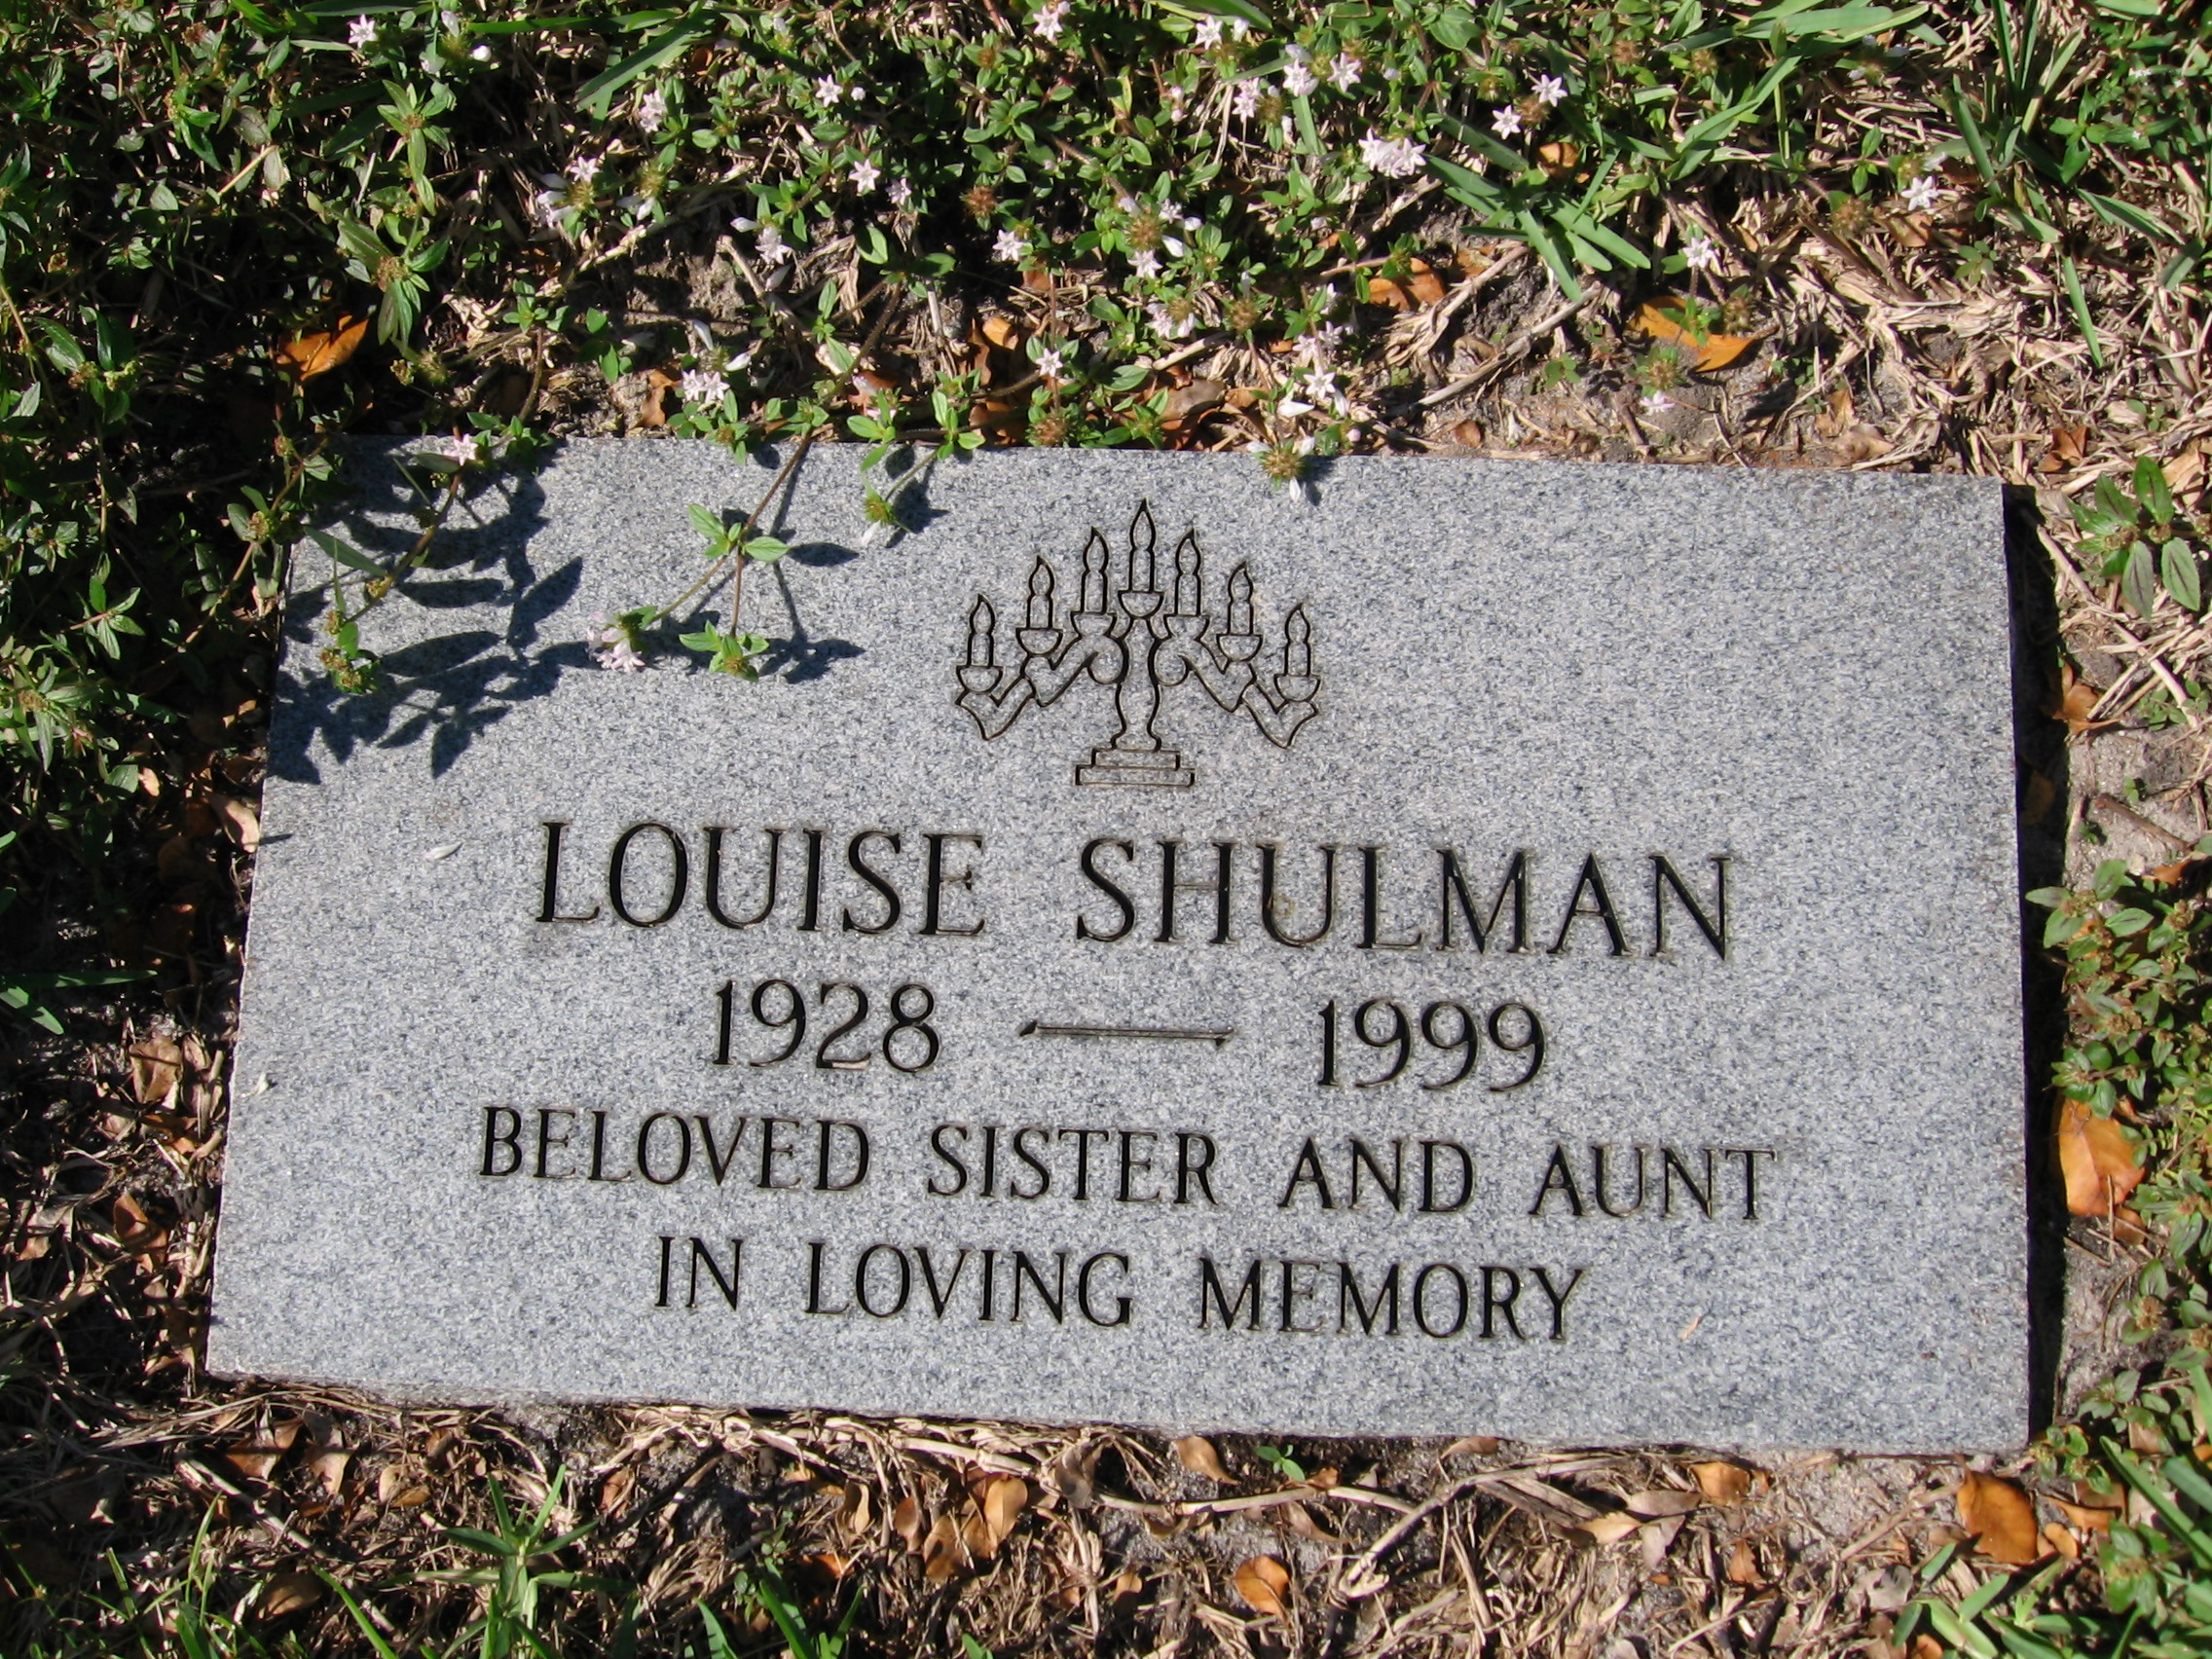 Louise Shulman